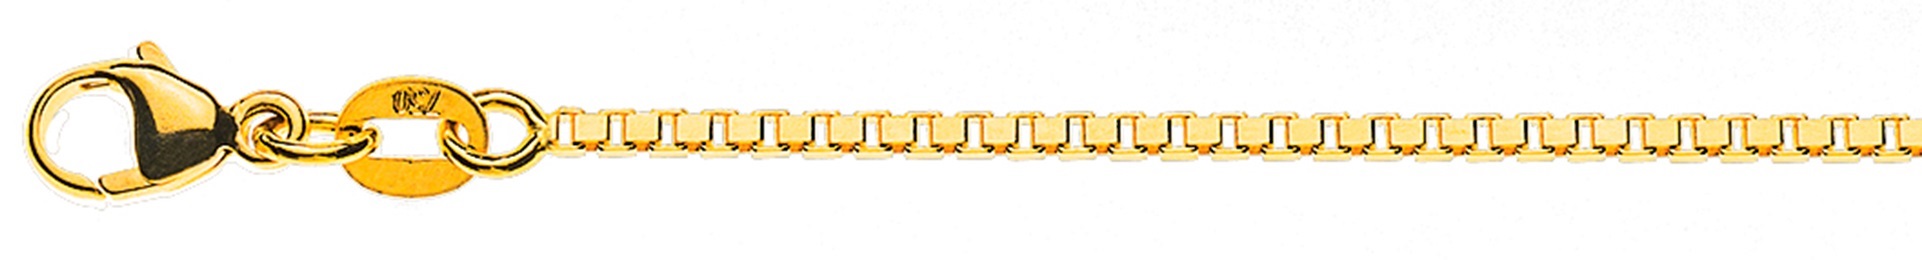 AURONOS Style Halskette Gelbgold 9K Venezianerkette diamantiert 42cm 1.4mm